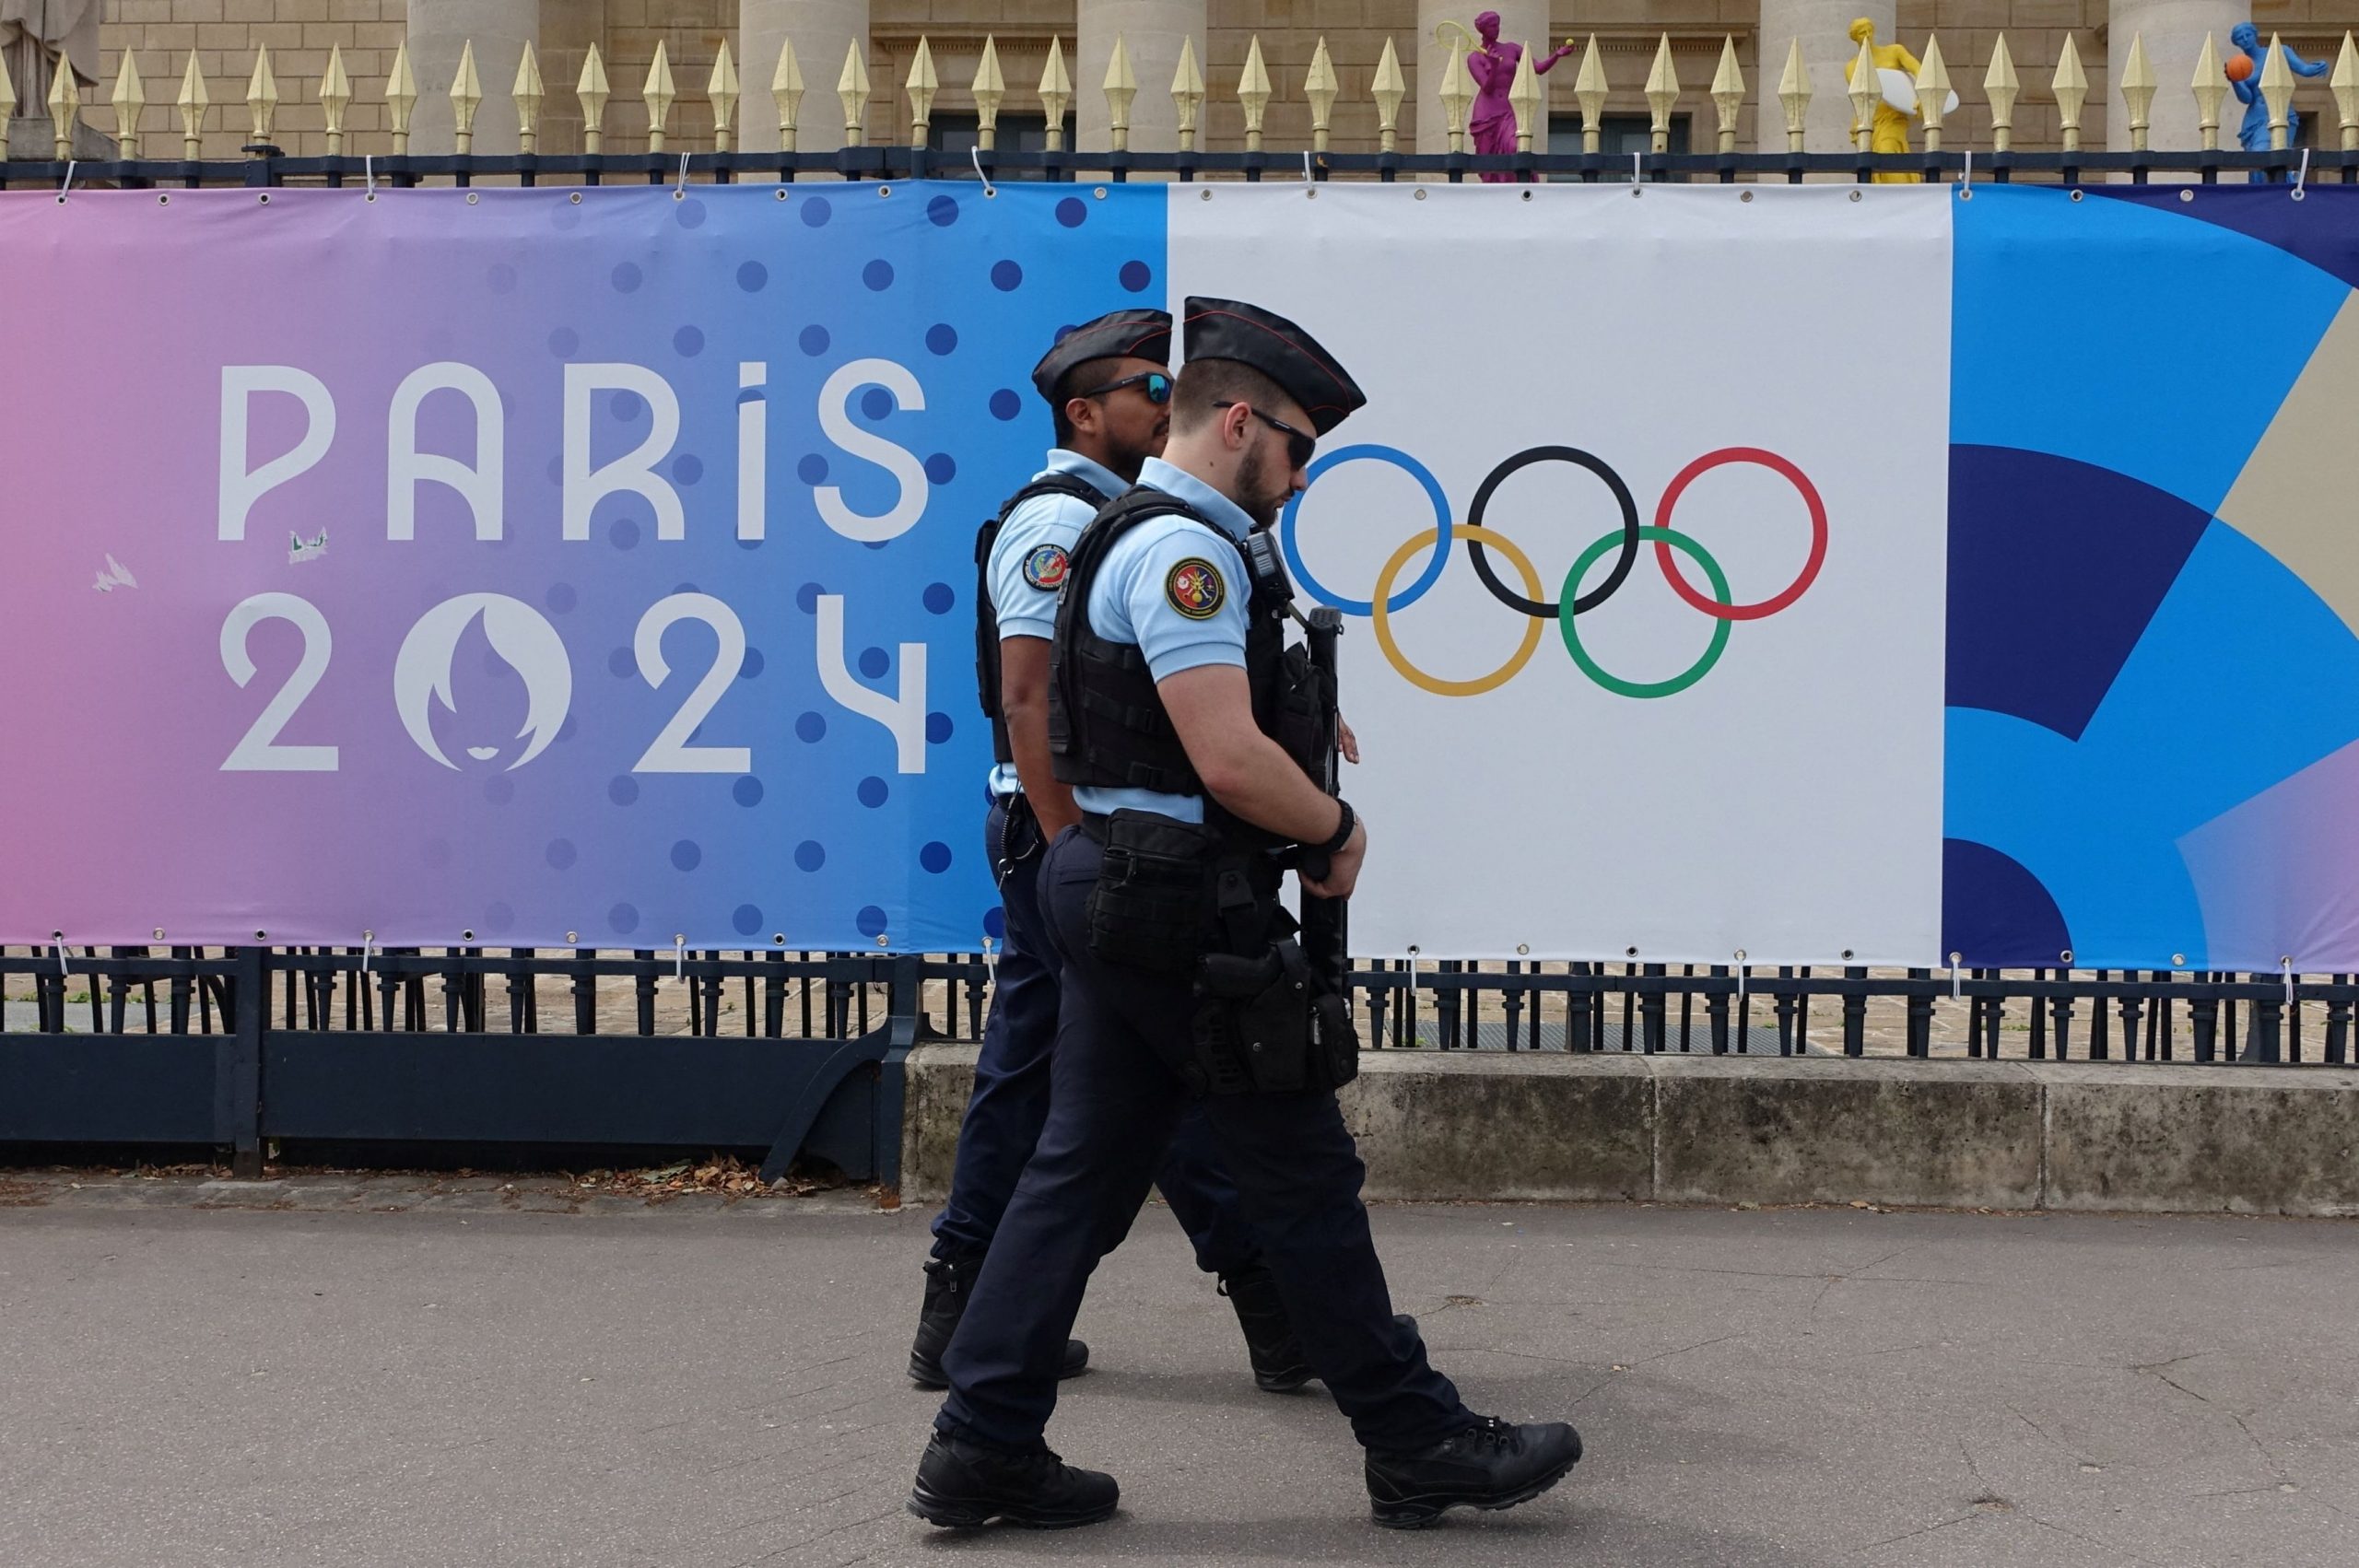 Ολυμπιακοί Αγώνες 2024: Οι γαλλικές αρχές κατηγορούνται για «κοινωνική εκκαθάριση» μεταναστών και αστέγων